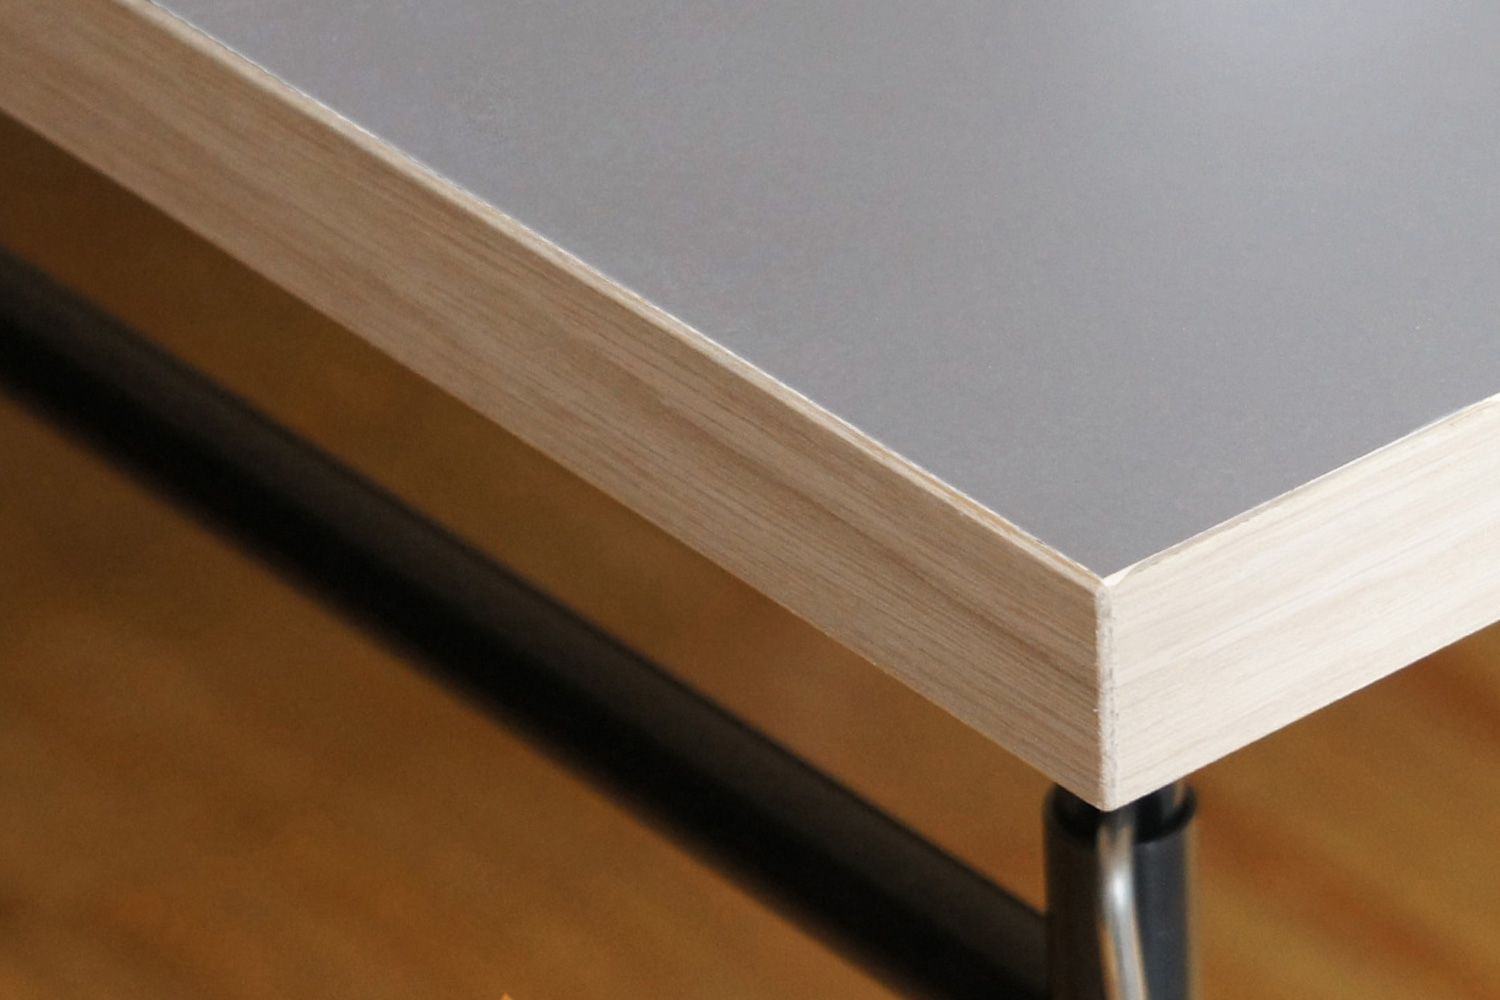 リチャード ランパート アイアーマン テーブル リノリウム ぺブルグレー 120 / 140 / 160cm 天板の側面はナチュラルなオーク材